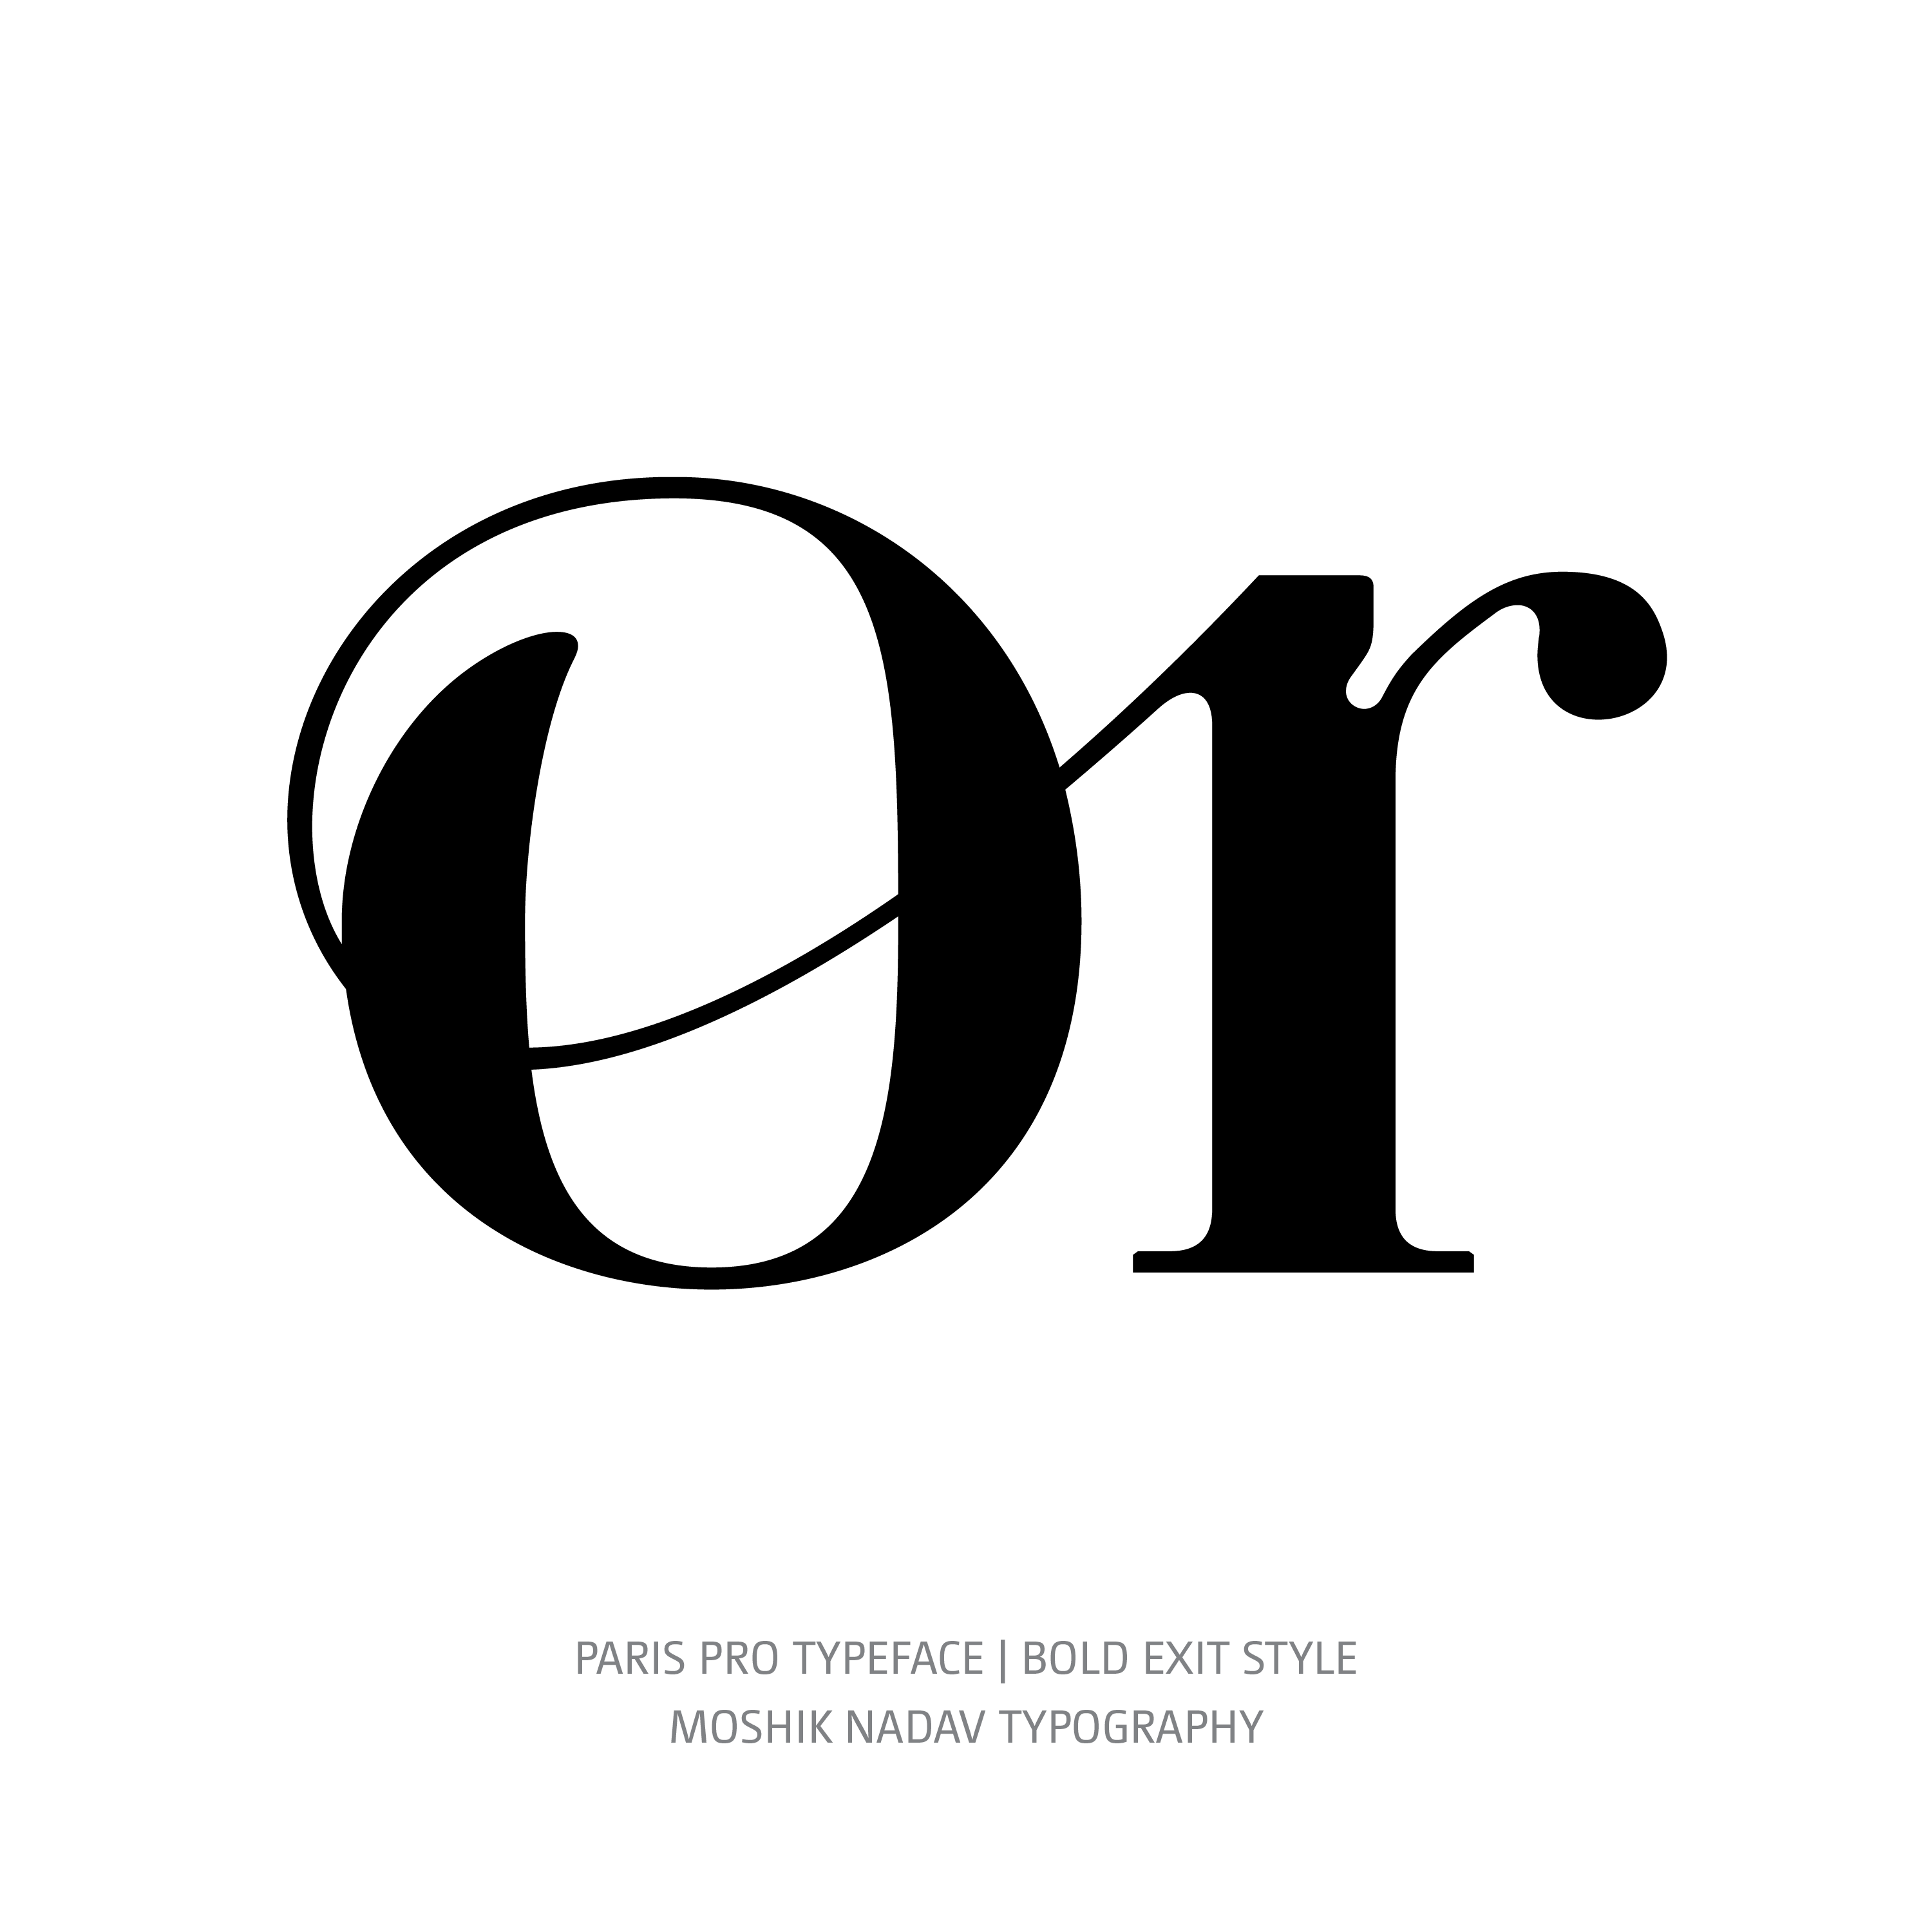 Paris Pro Typeface Bold Exit or ligature